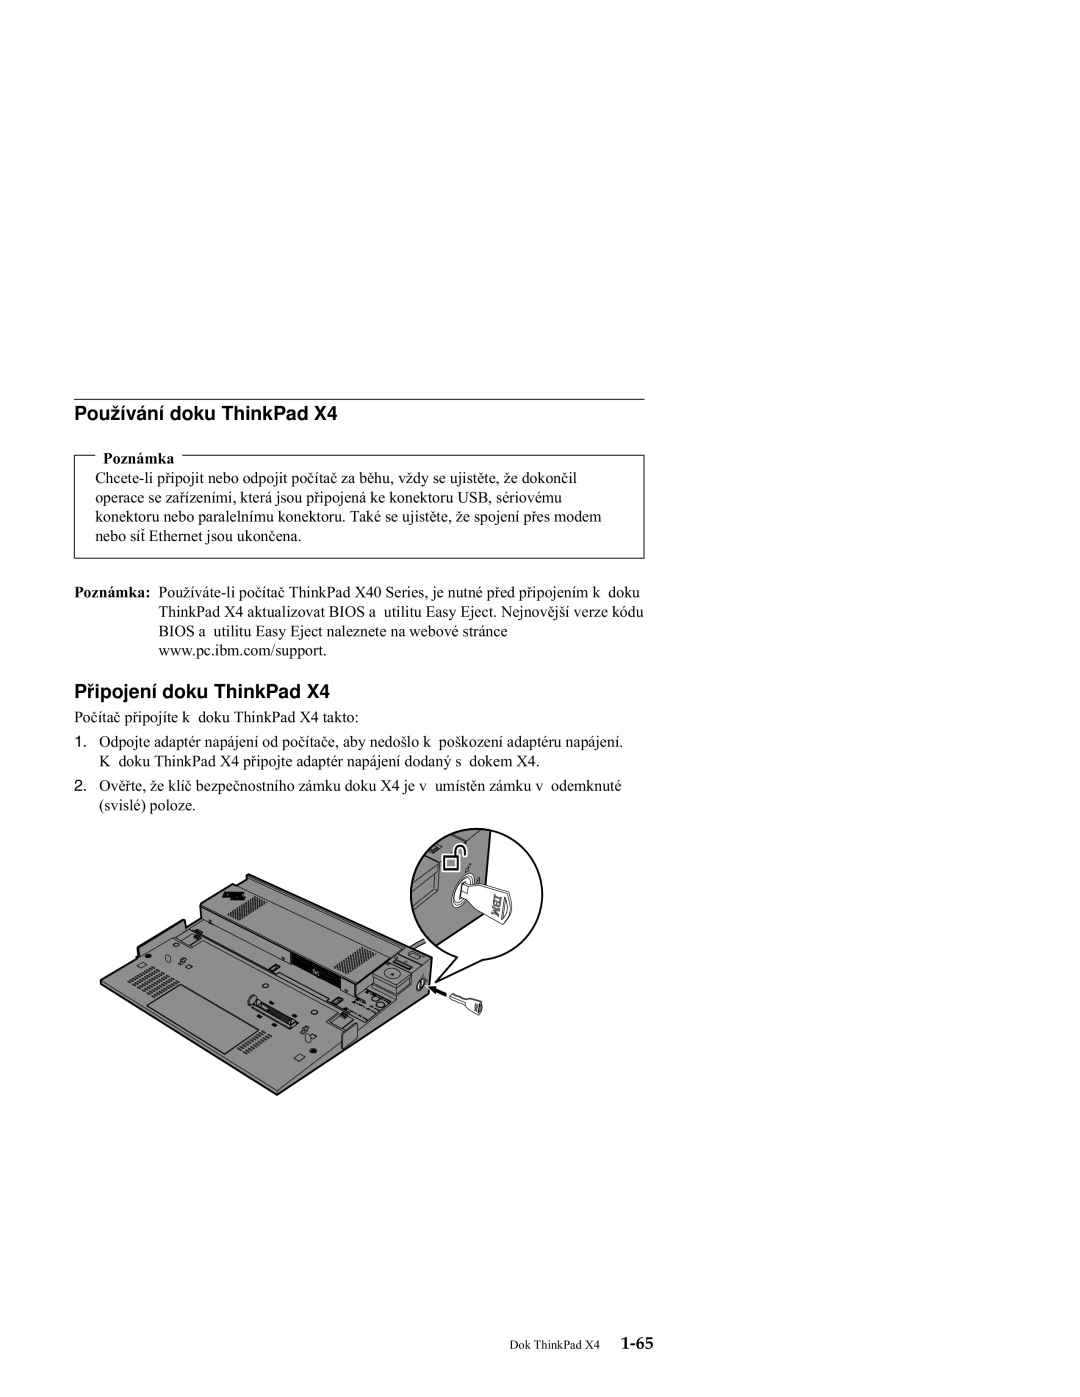 IBM X4 manual Používání doku ThinkPad, Připojení doku ThinkPad, Poznámka 